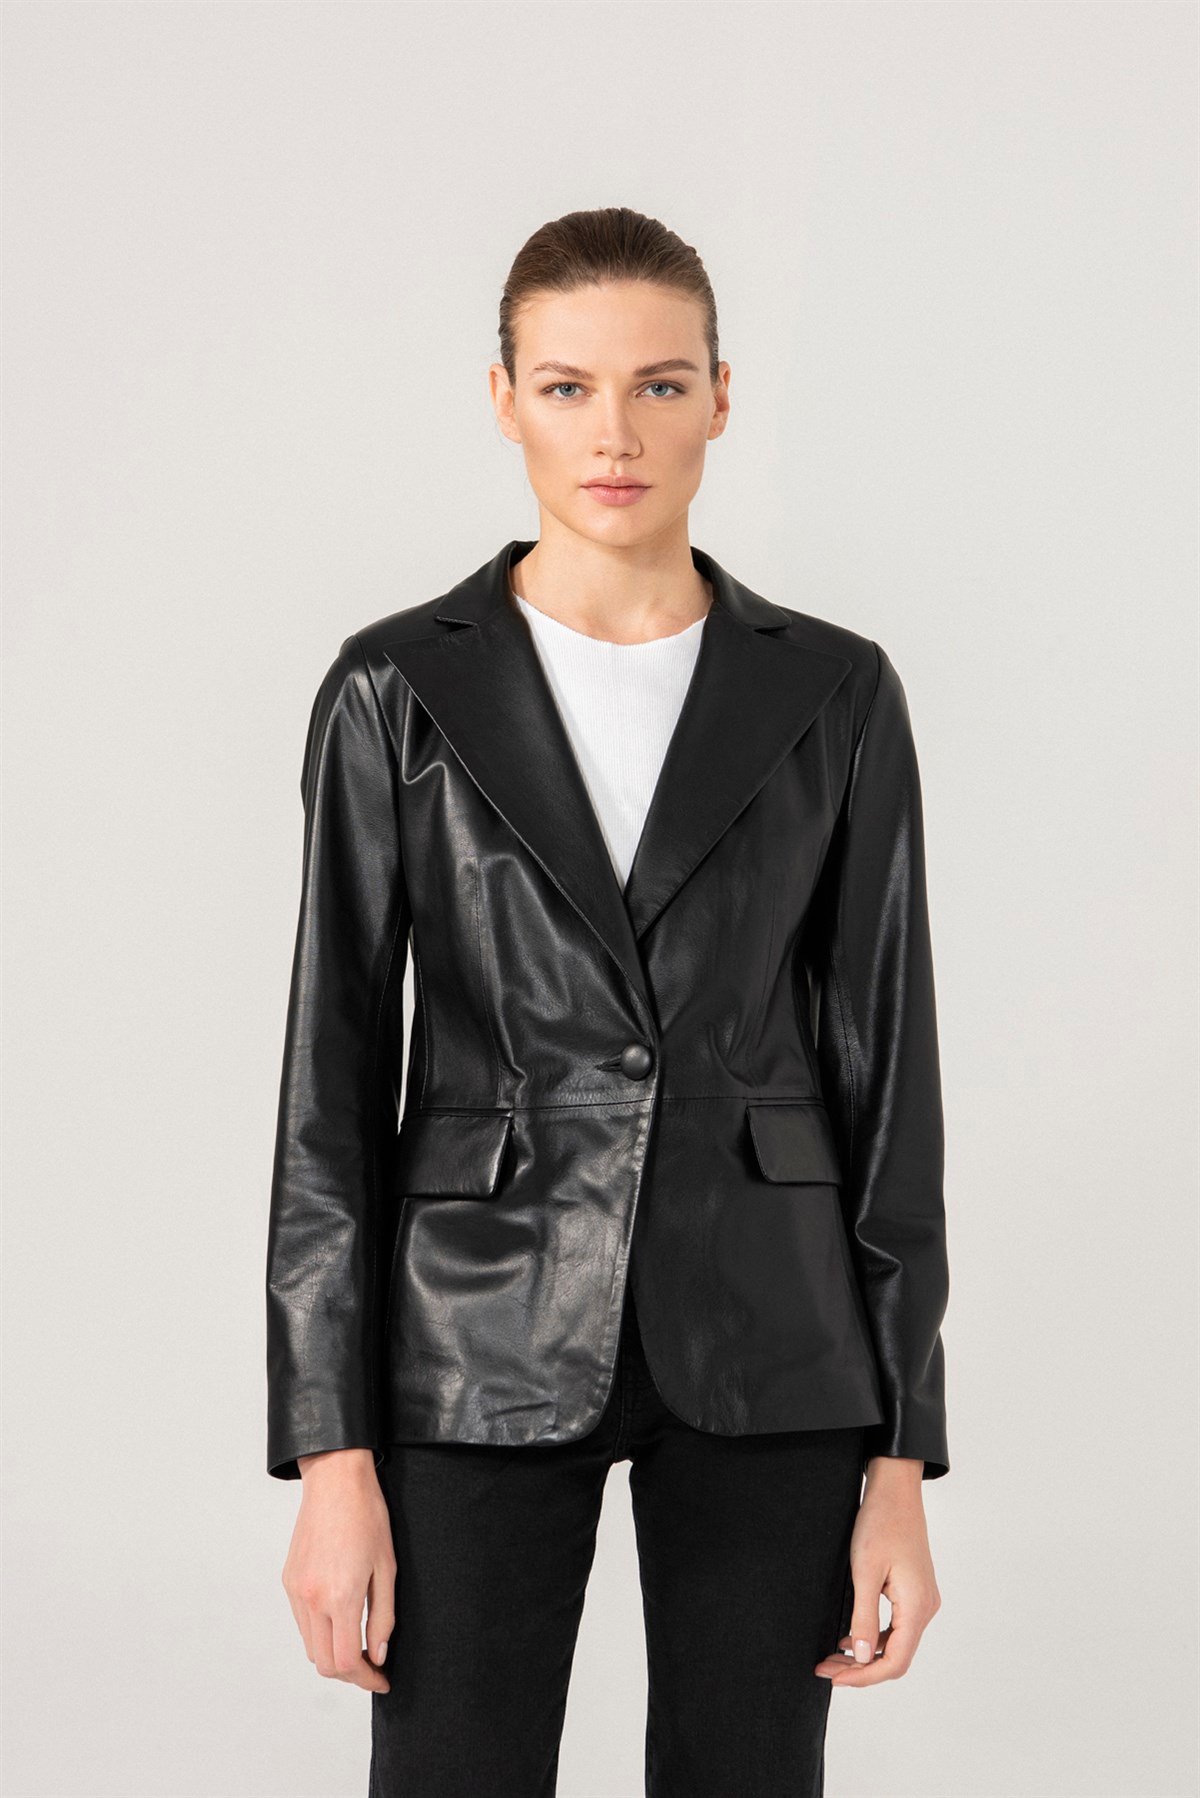 OLIVIA Tek Düğmeli Siyah Deri Blazer Ceket Kadın Deri Ceket Modelleri